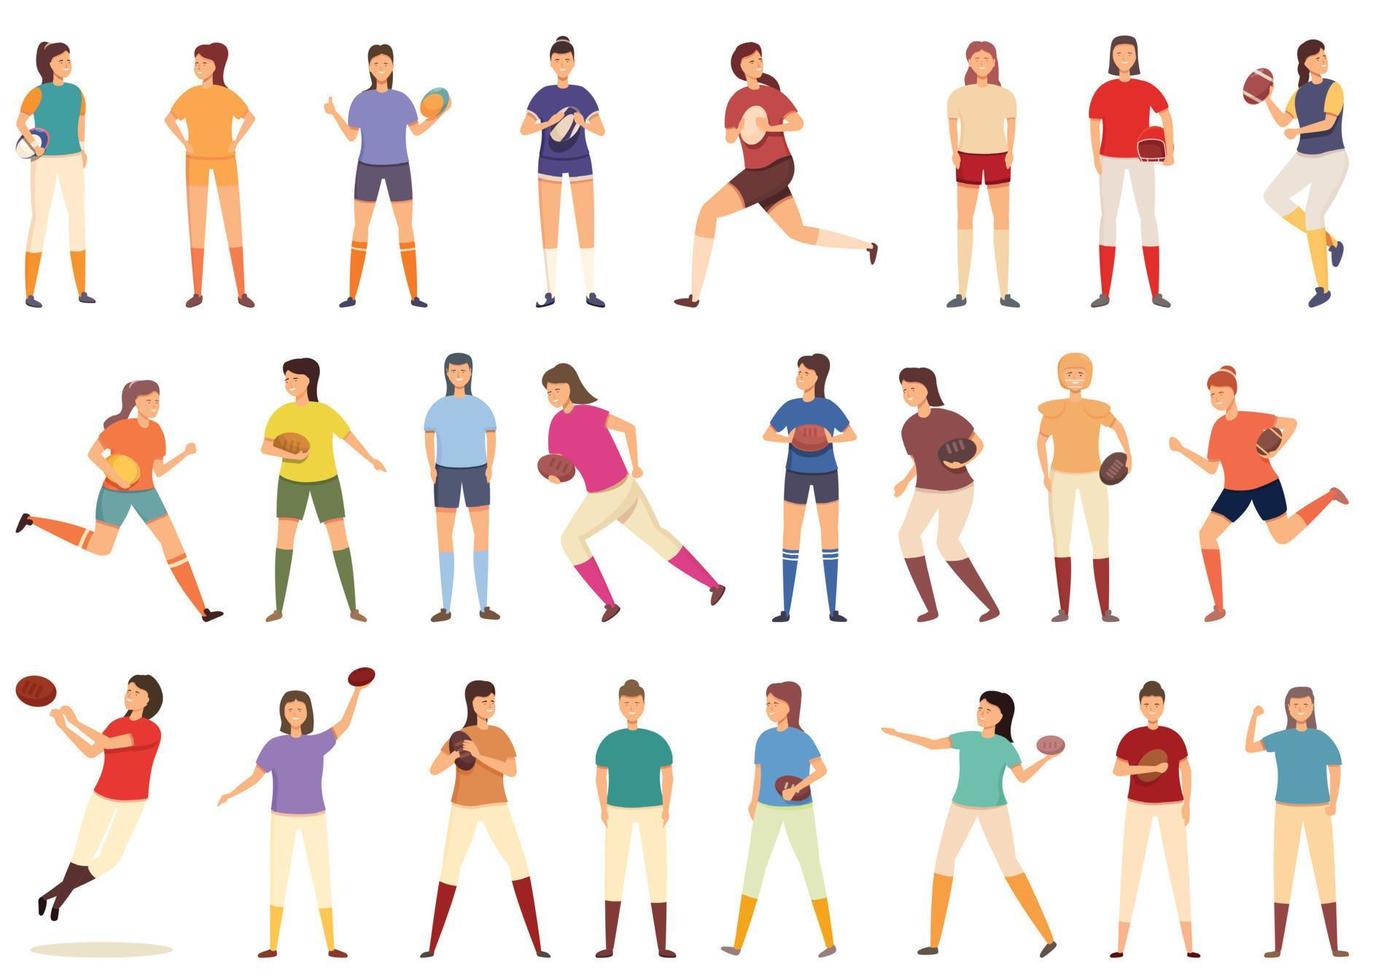 iconos de jugador de rugby de mujer establecer vector de dibujos animados. chica de fútbol